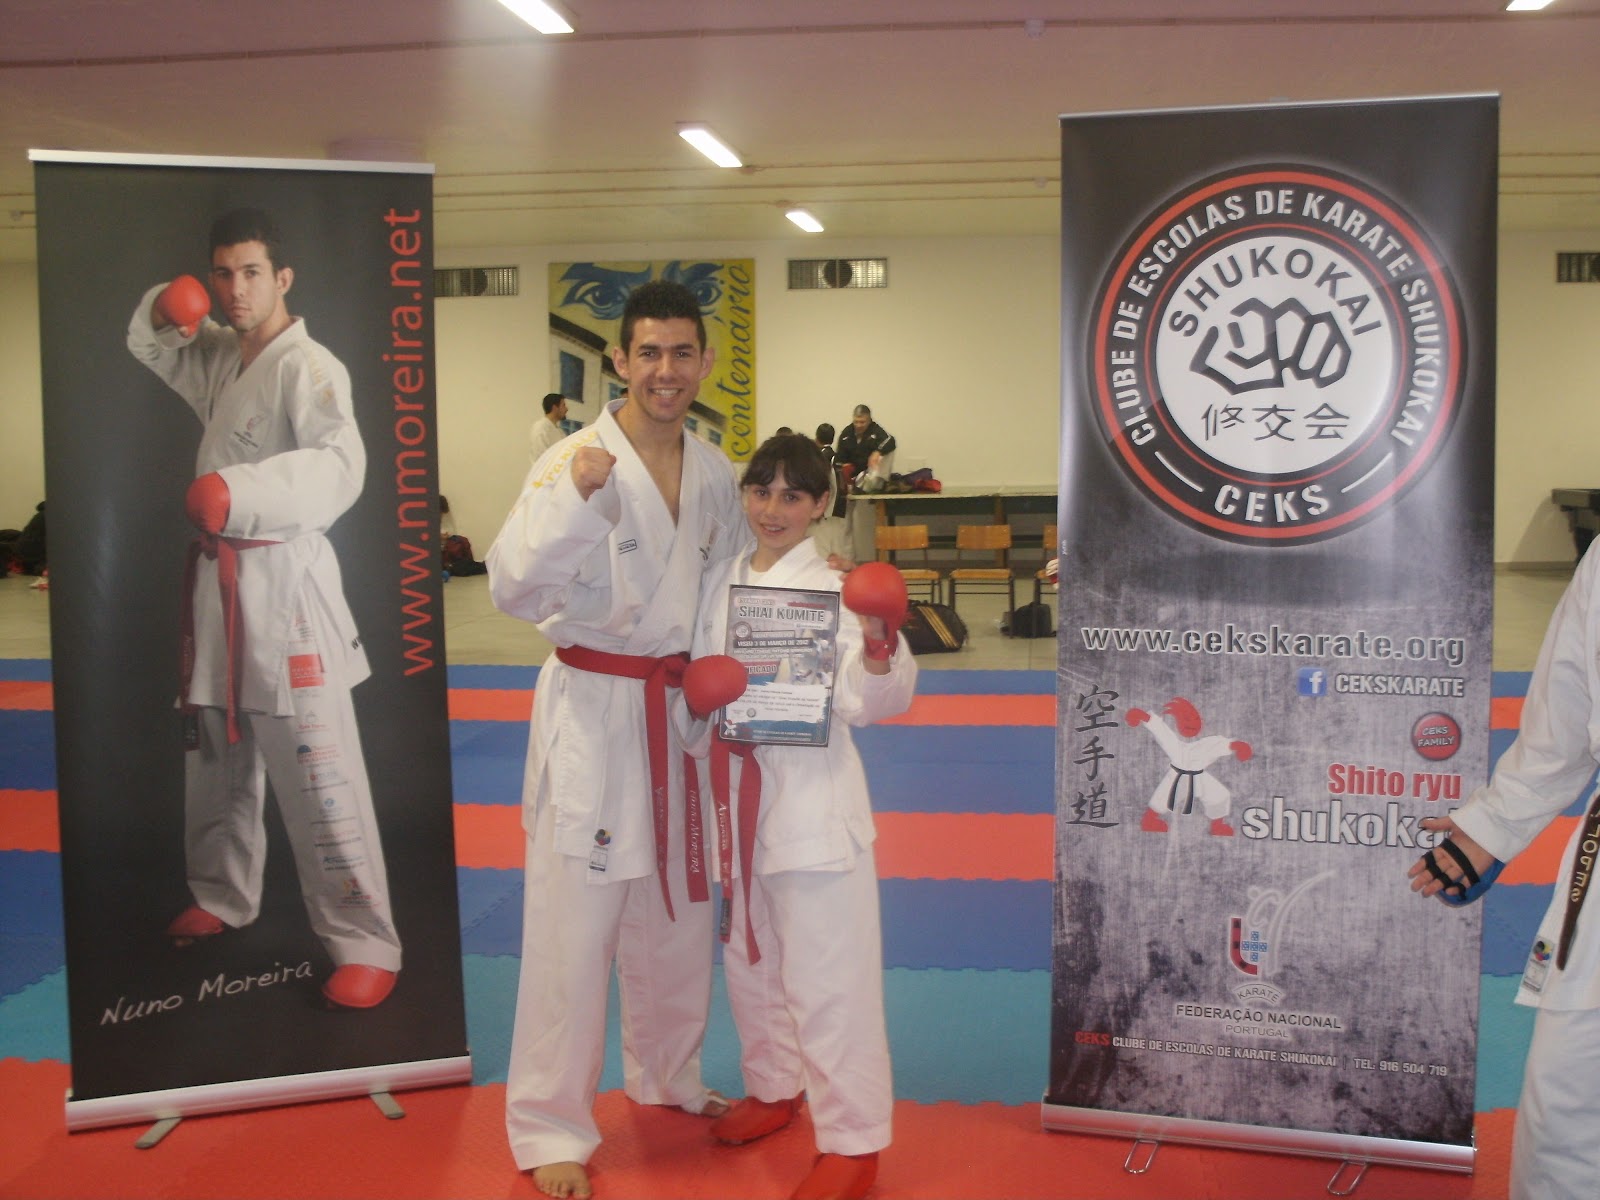 Associação Karate Shotokan Trancoso EstÁgio Shiai Kumite Em Viseu Ceks Nuno Moreira 